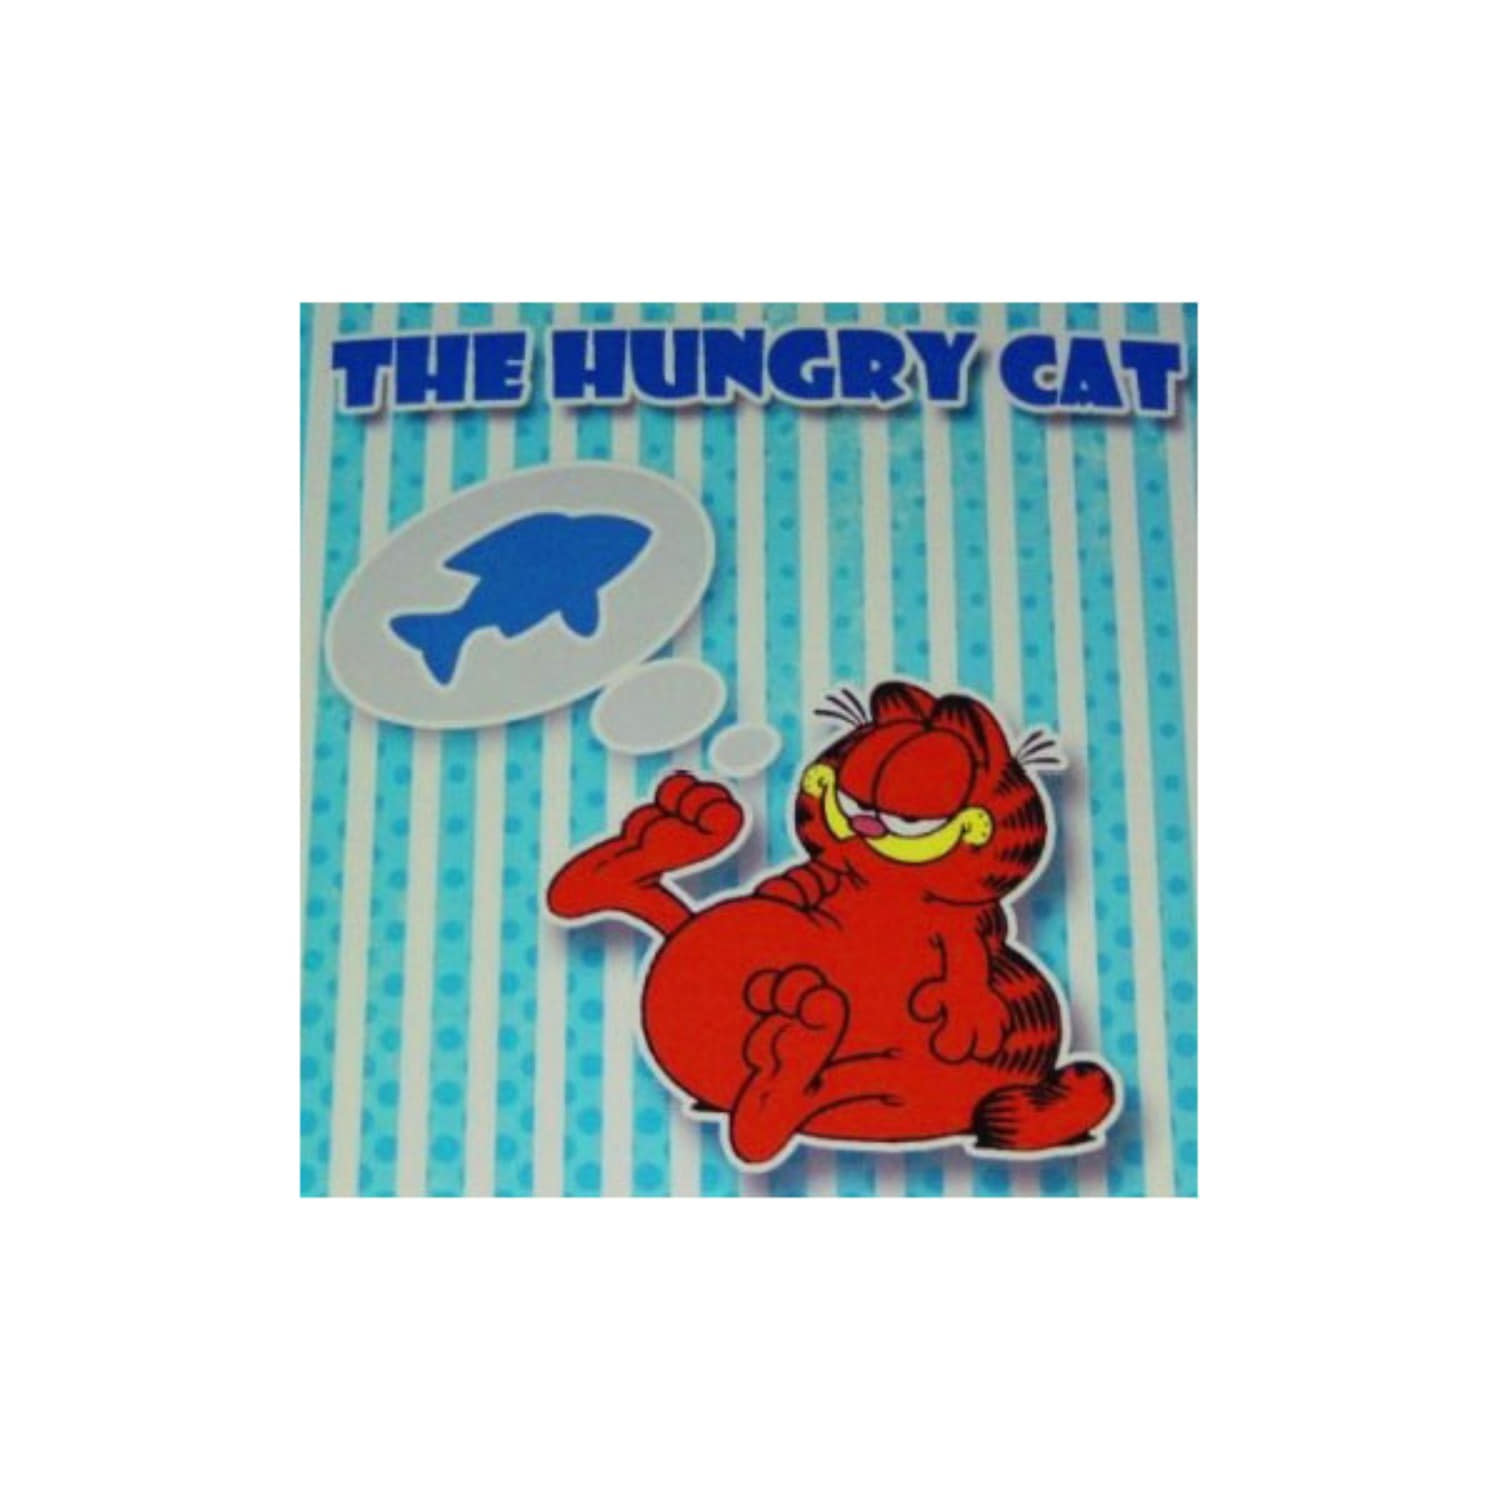 [배고픈 고양이] The Hungry Cat 고양이가 생선을 발라먹는 내용의 재미있는 카드마술입니다.